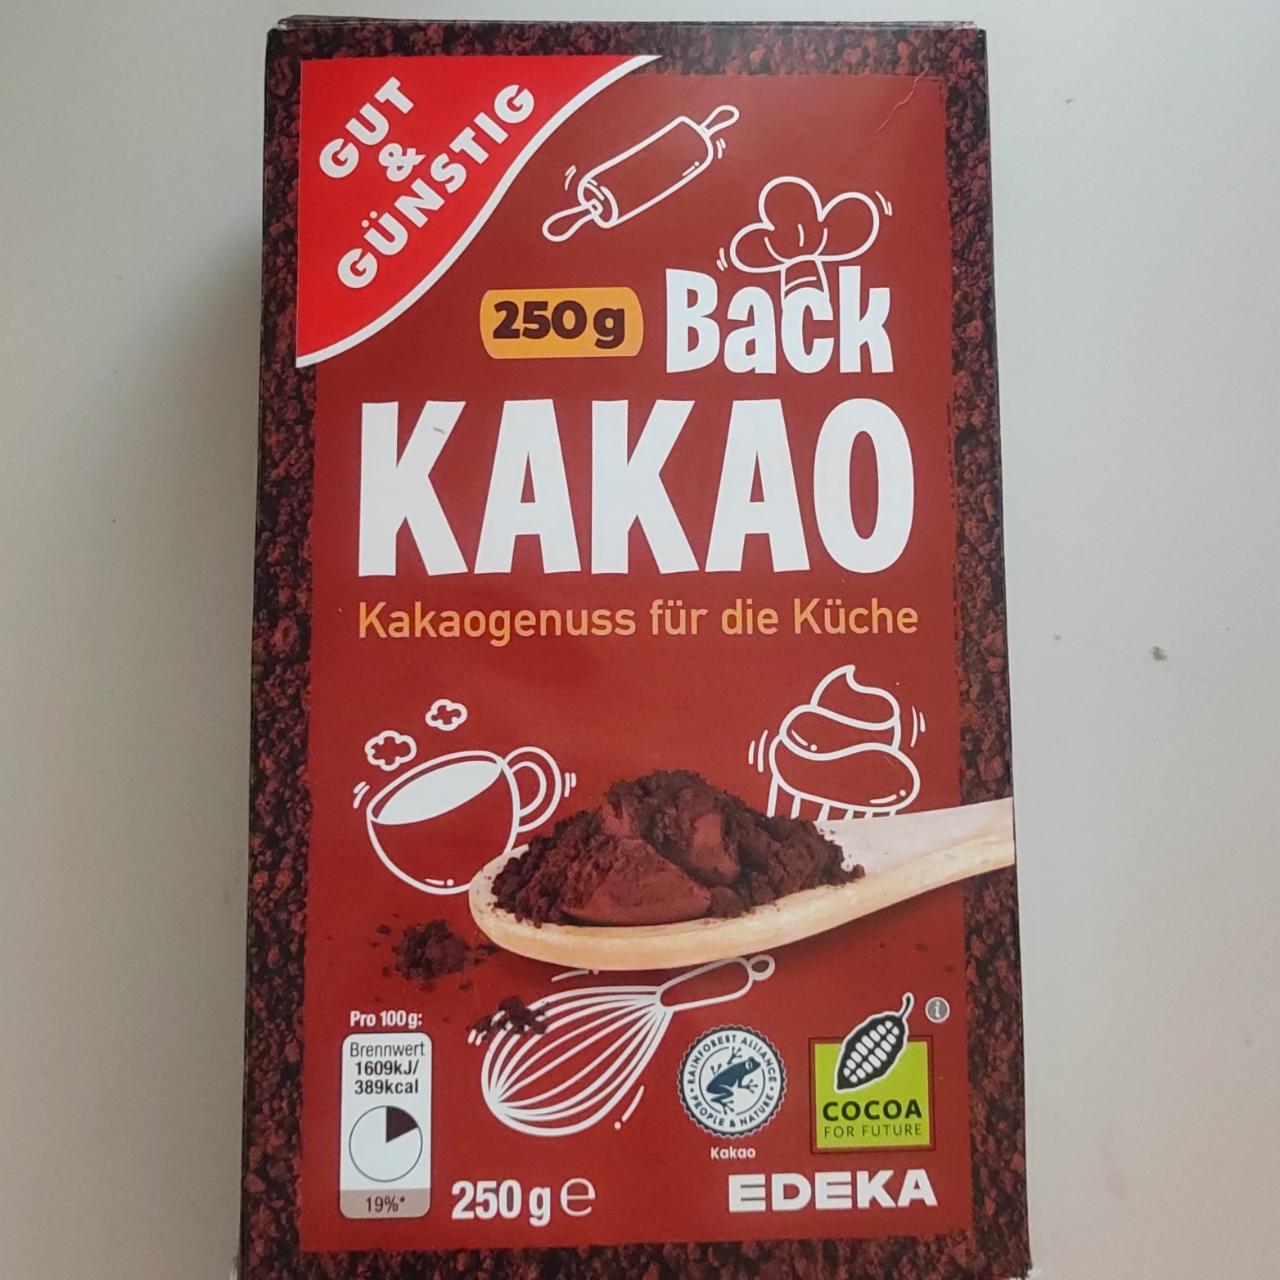 Fotografie - Back Kakao Kakaogenuss für die Küche Gut & Günstig